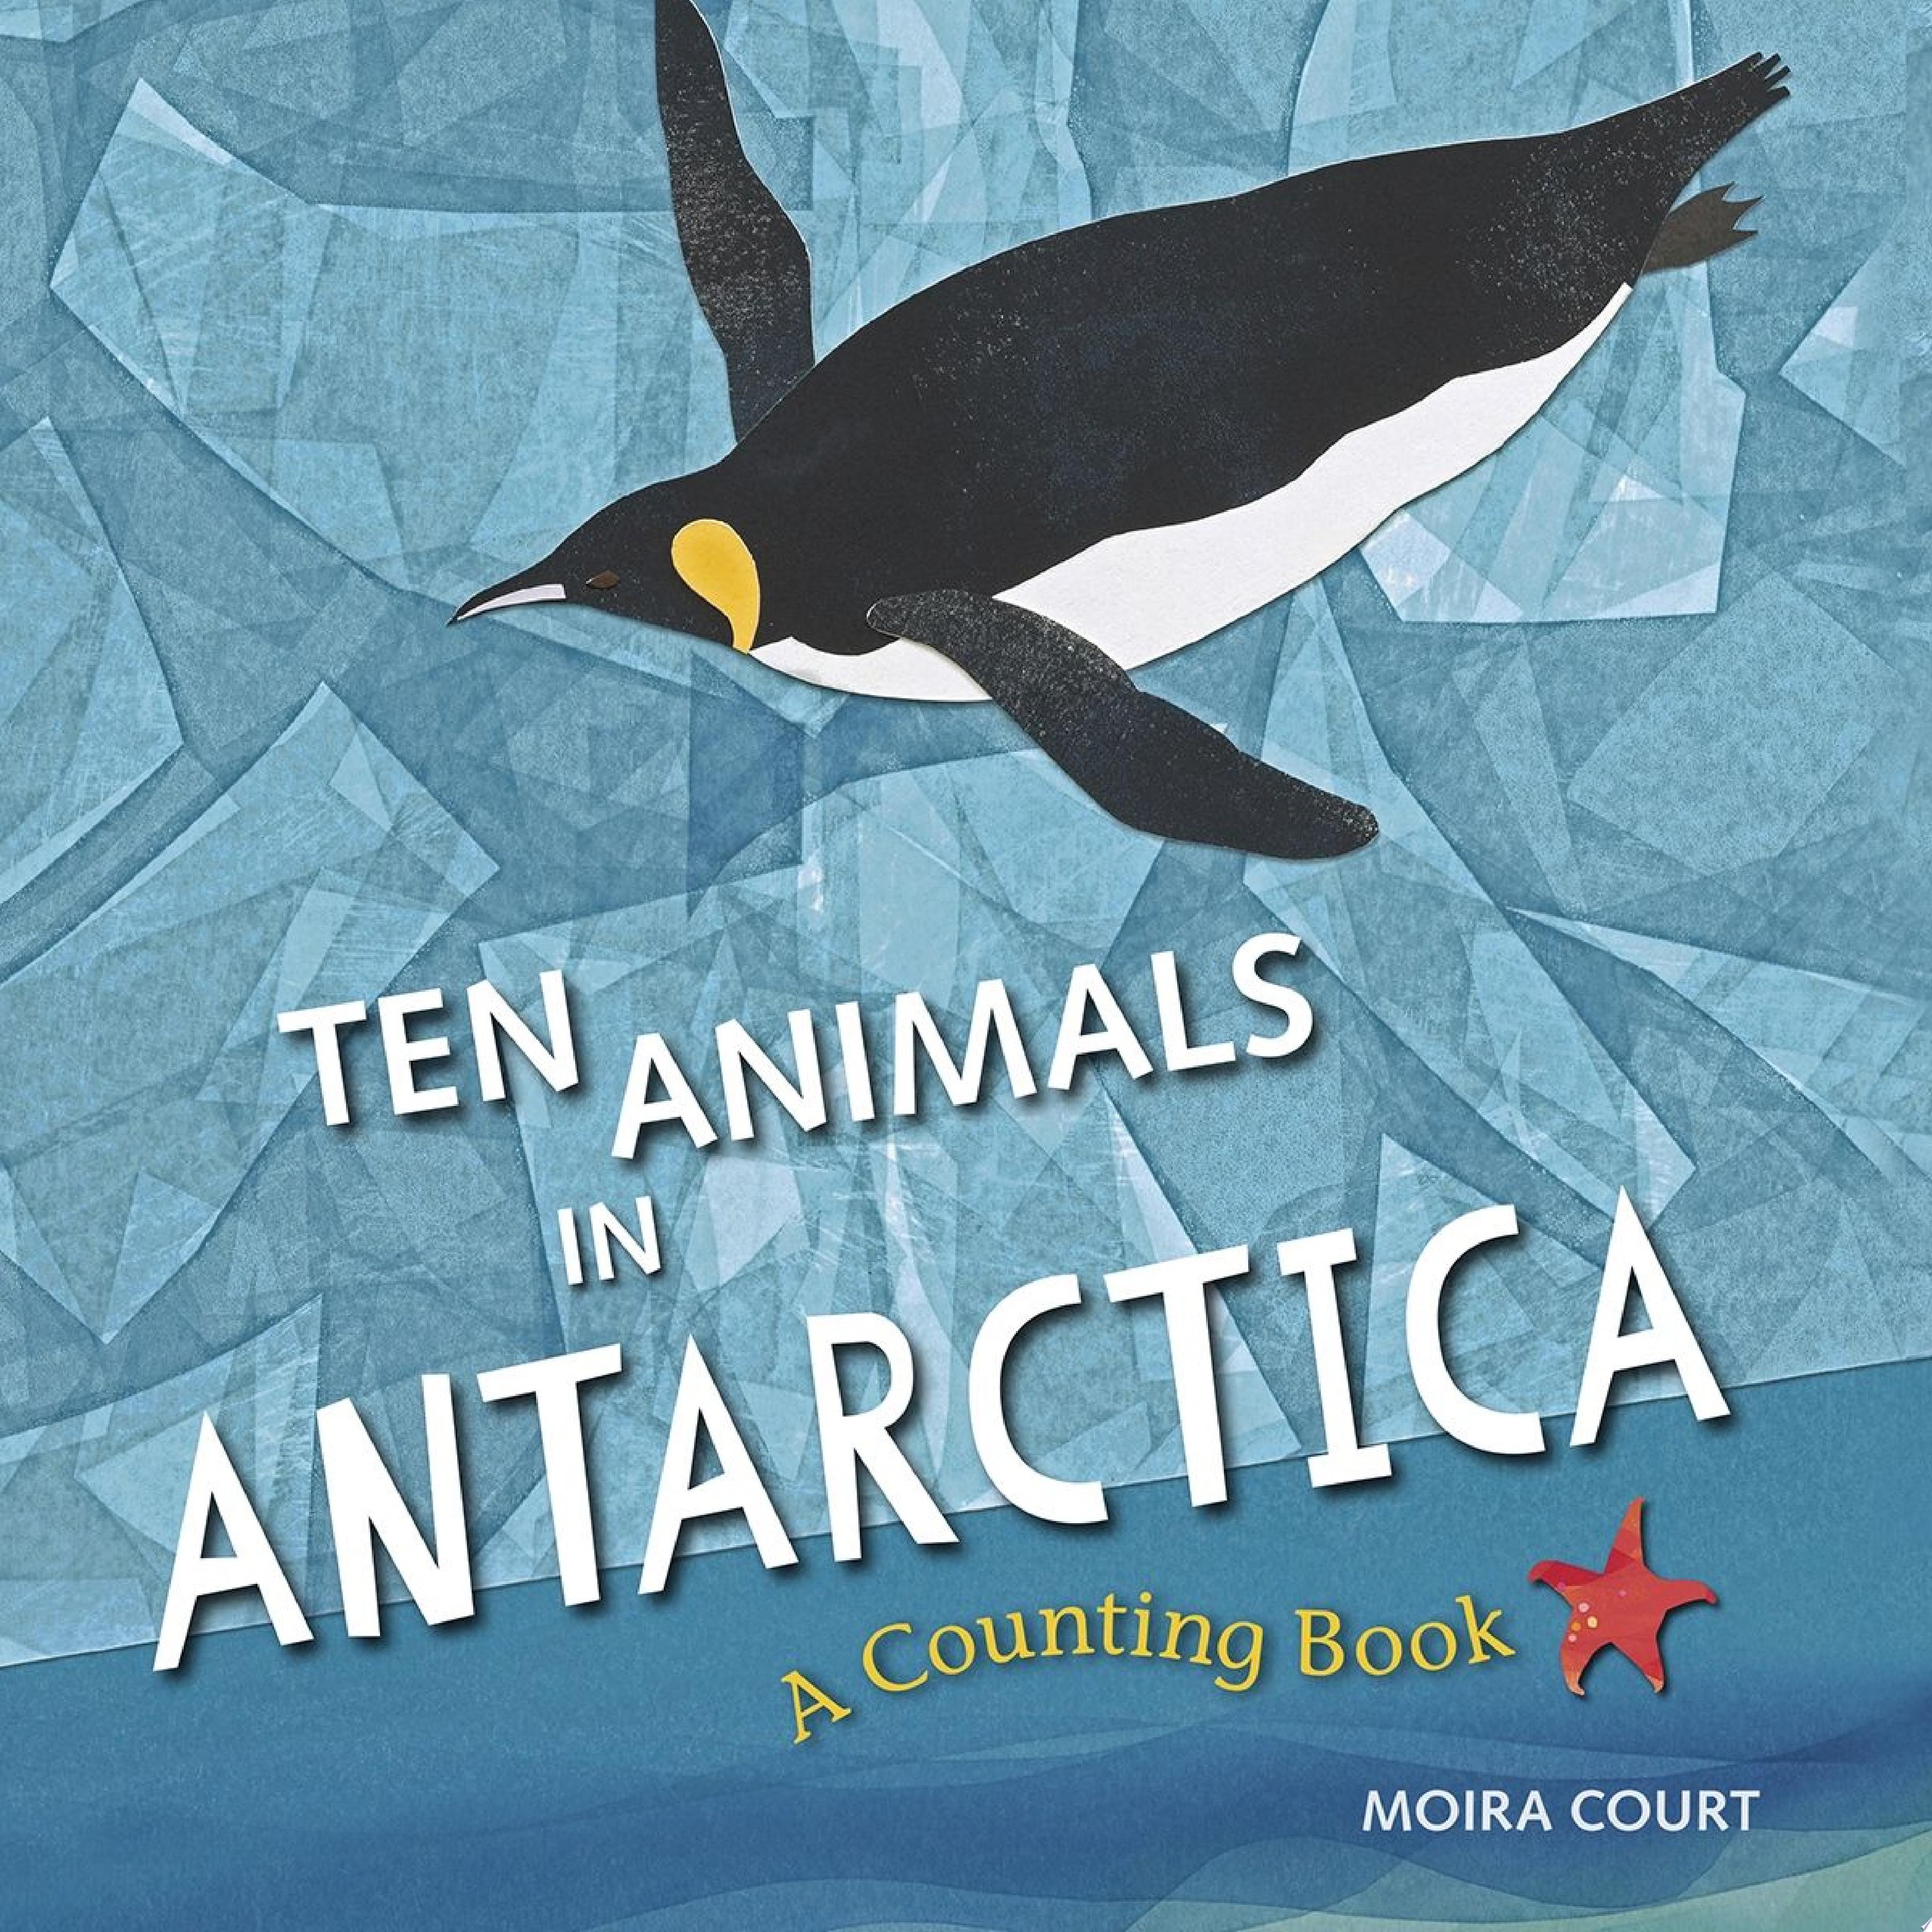 Image for "Ten Animals in Antarctica"